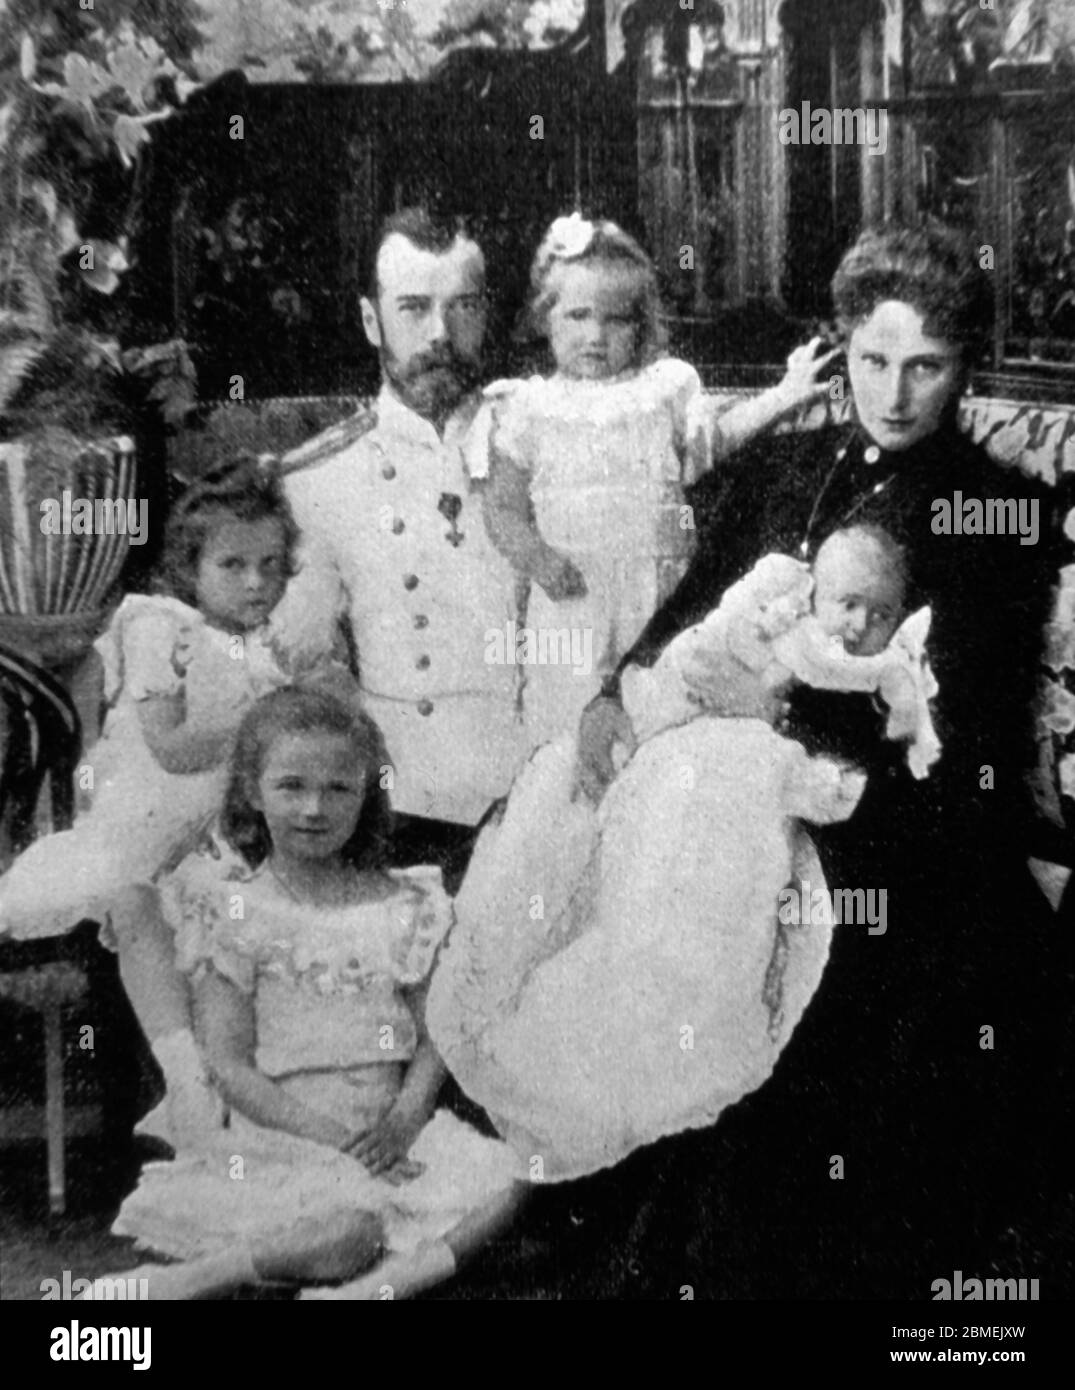 Nicolás II (1868-1918), último zar de Rusia, con su familia, su esposa, la gran duquesa Alejandra Fiodorovna Romanova (1872-1918), y sus hijas Olga Nikolaevna (1895-1918), Tatiana Nikolaevna (1897-1918), Maria Nikolaevna (1899-1918), 1901 Nikolaevna-1918 año 1901. Foto Stock